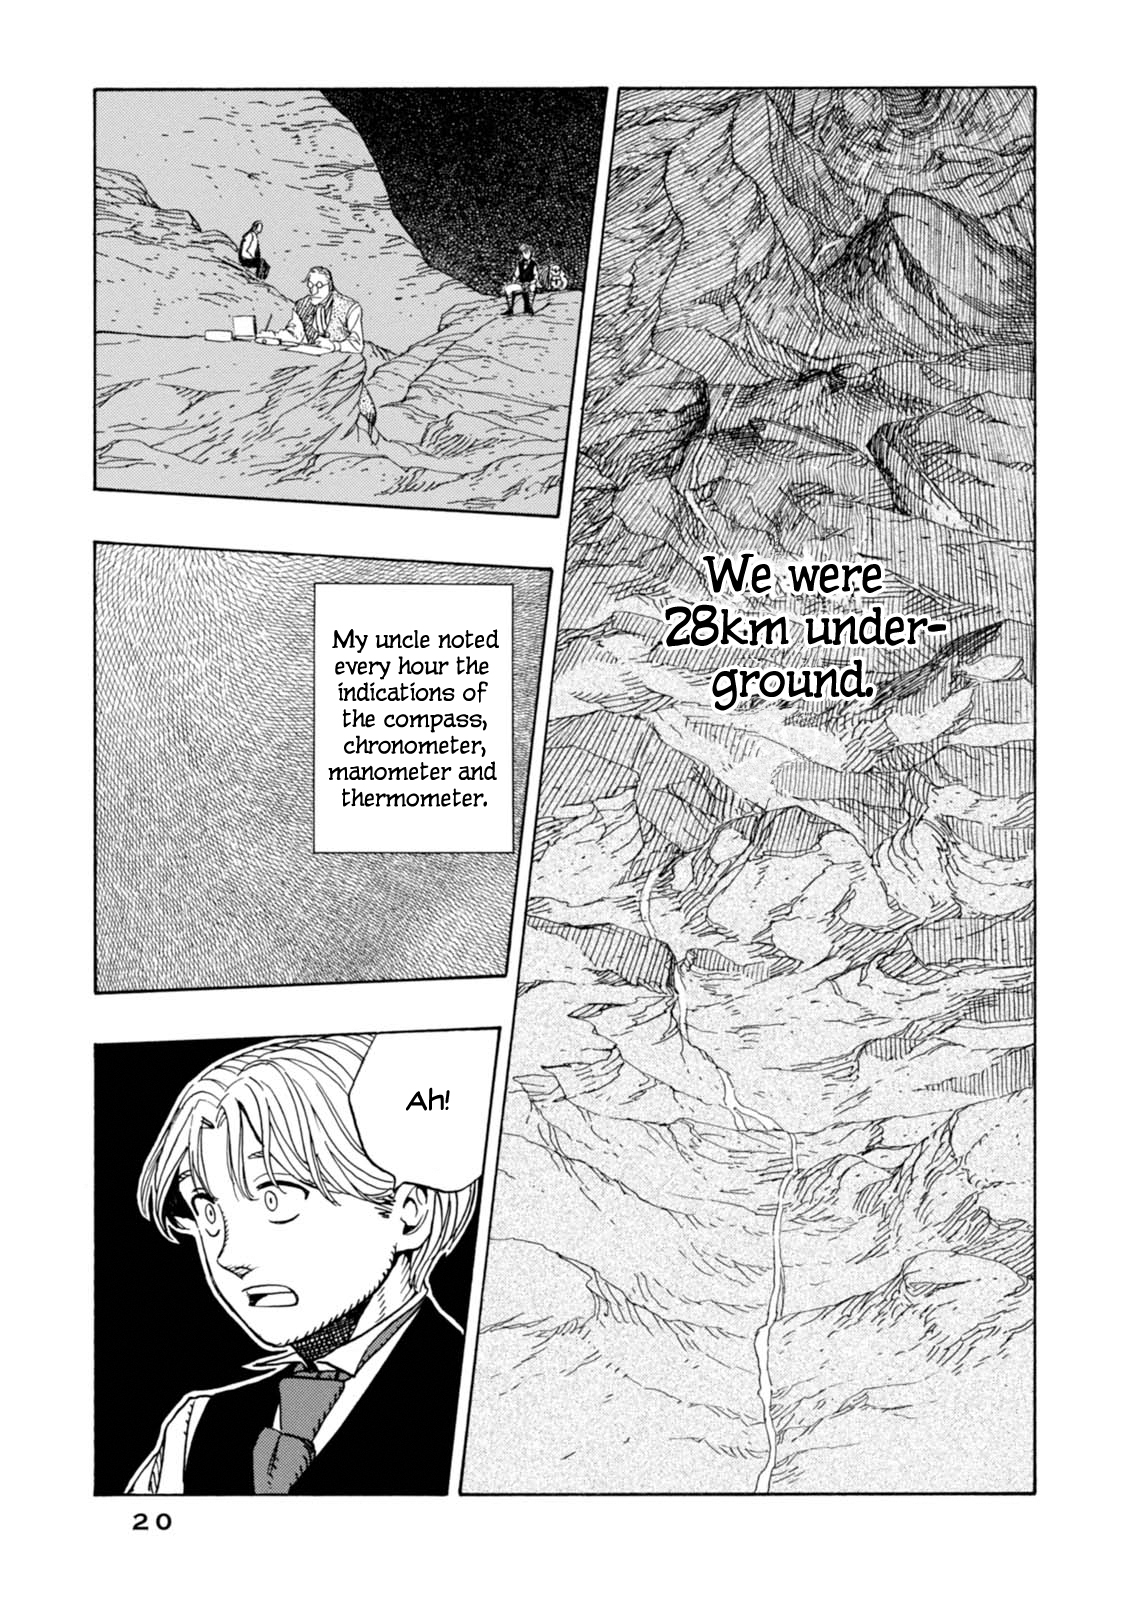 Chitei Ryokou Vol. 2 Ch. 7 Buried Alive